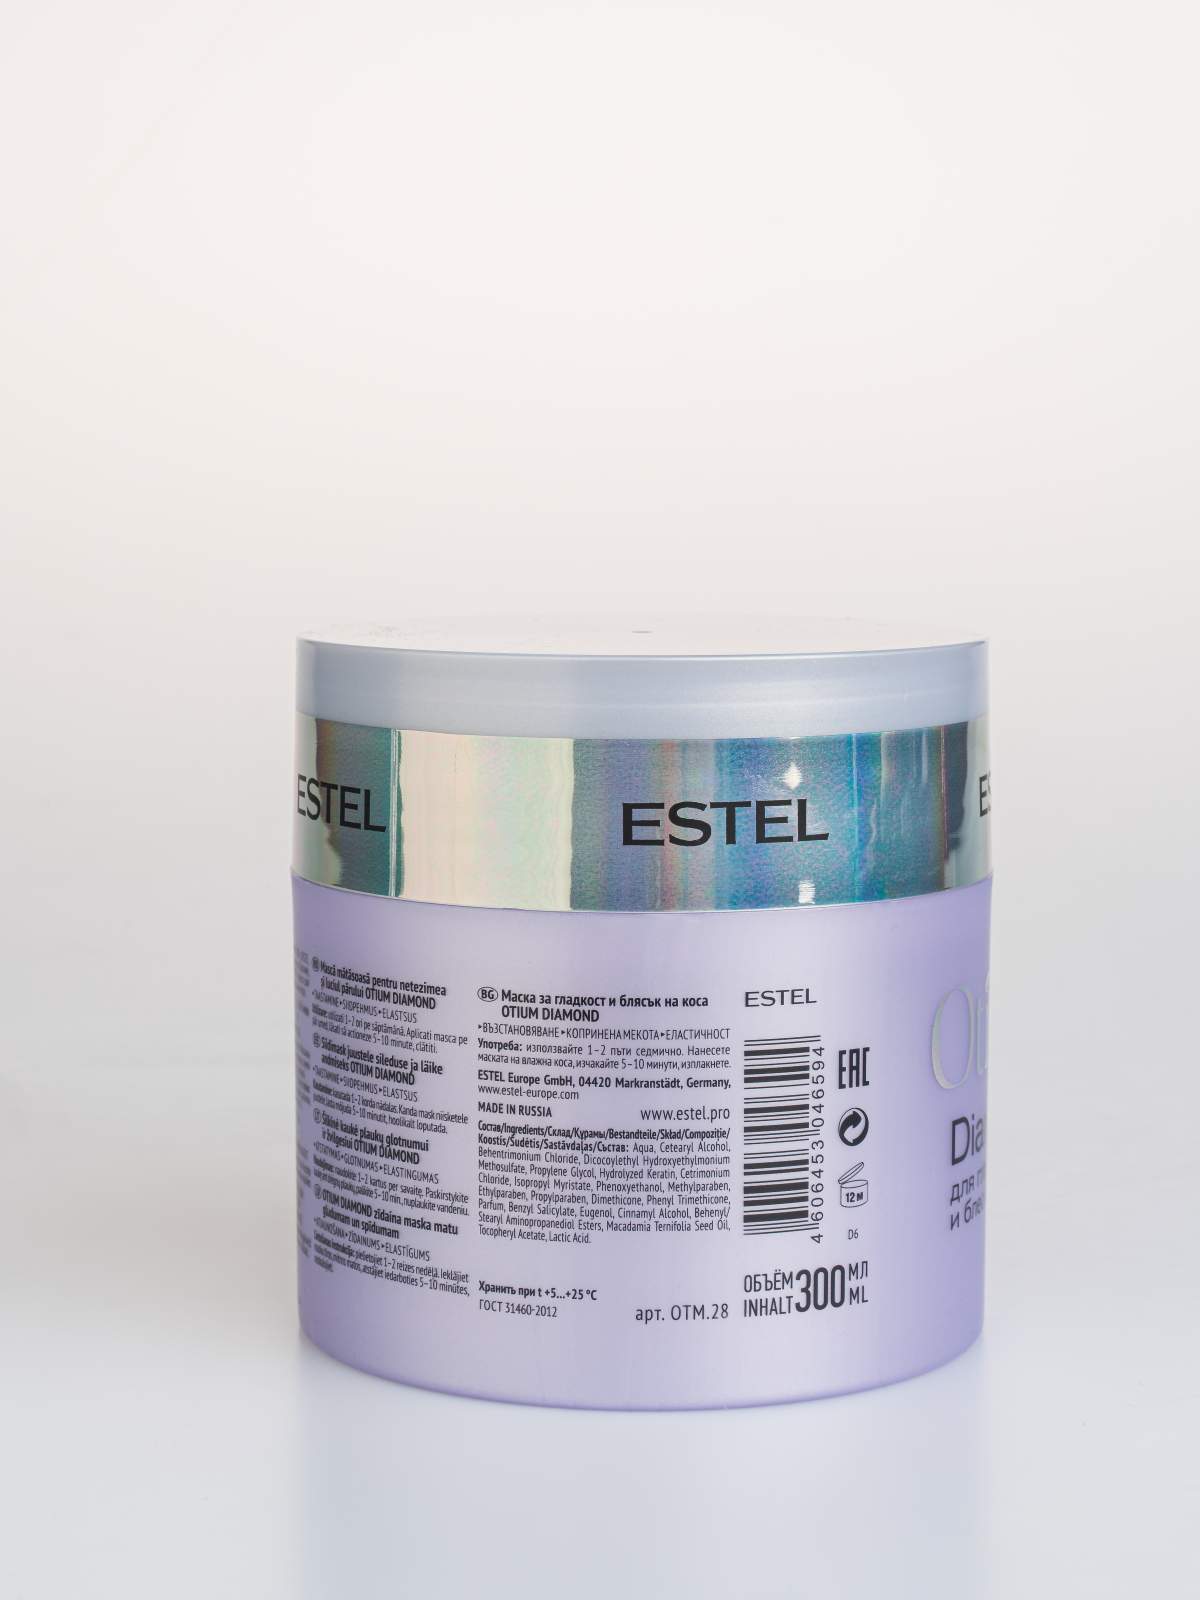 Маска для волос Estel Professional Otium Diamond Mask 300 мл